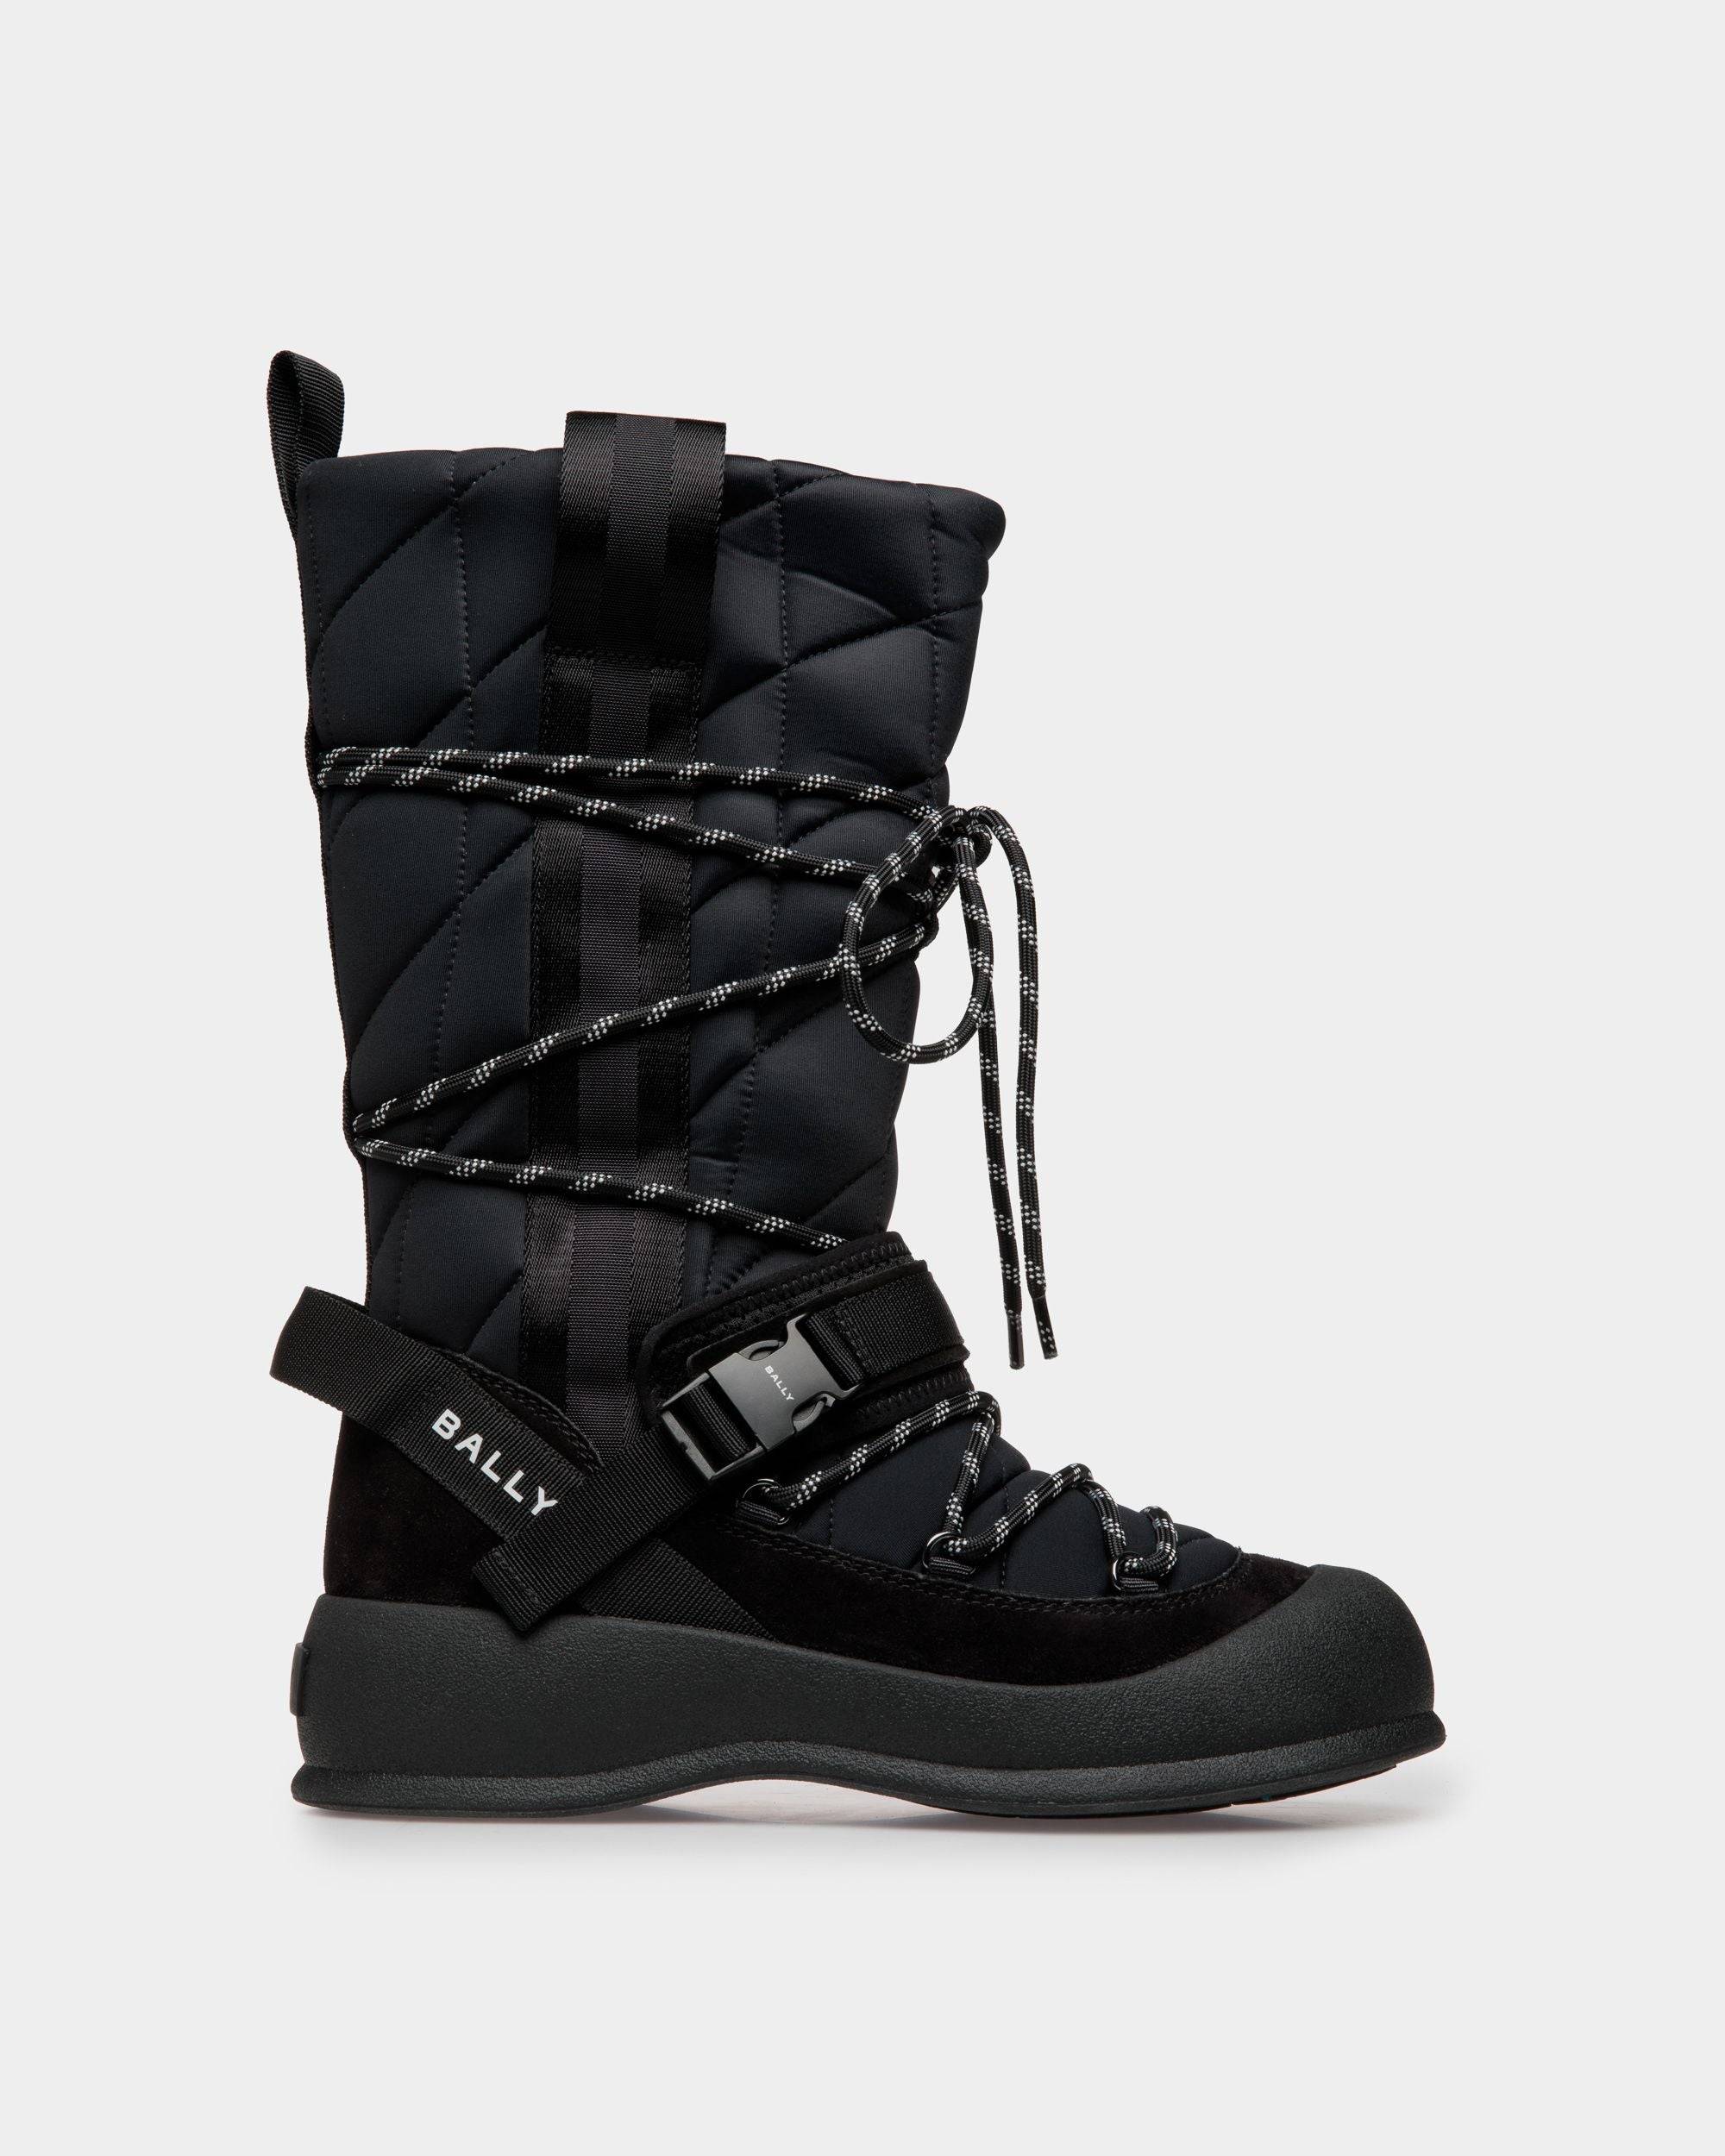 Frei | Women's Boot in Black Nylon | Bally | Still Life Side